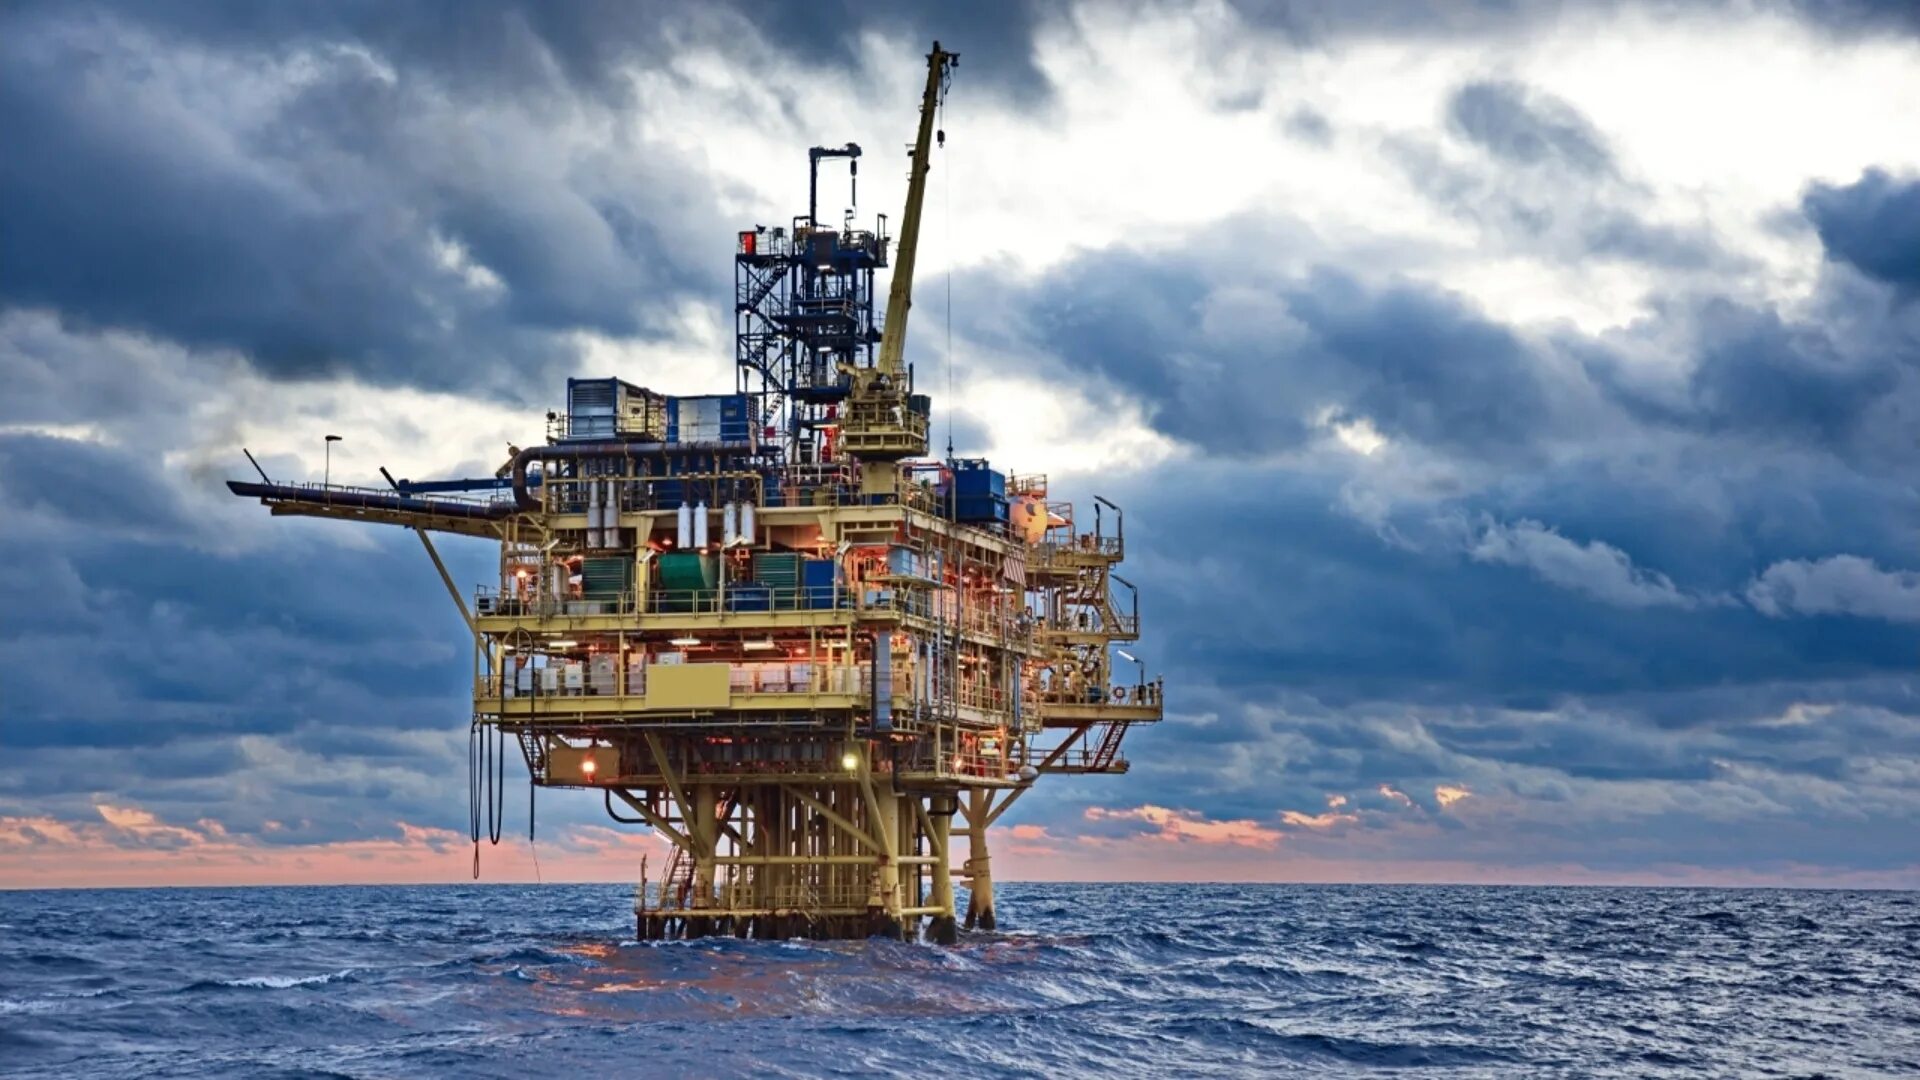 Австралия нефть газ. Нефтяная вышка в море. Детали нефтяной платформы. Нефтедобывающая платформа на земле. Нефтяная платформа майнкрафт.